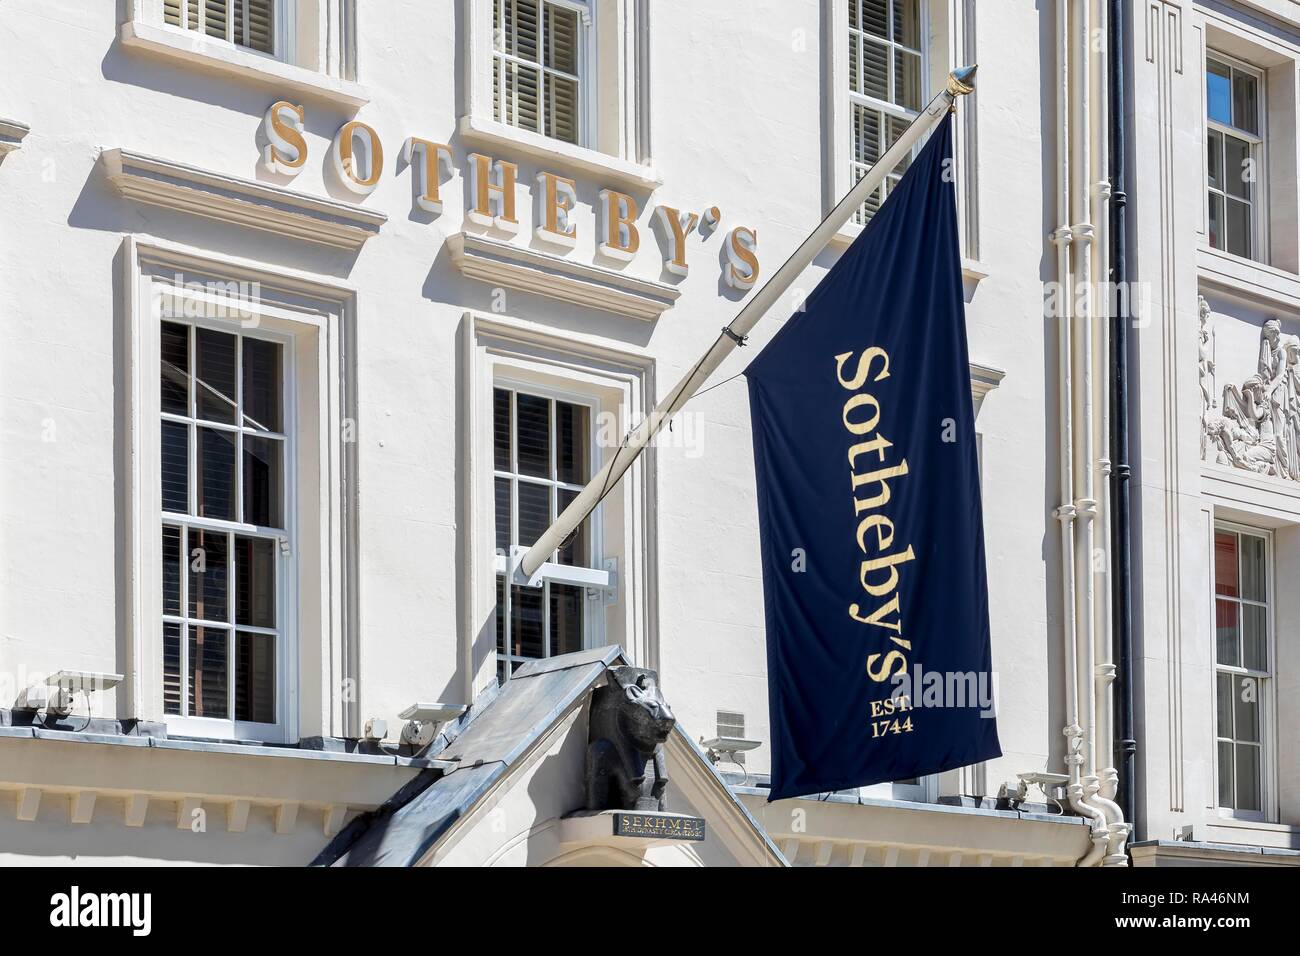 Sotheby's Auction House, Londres, Royaume-Uni Banque D'Images